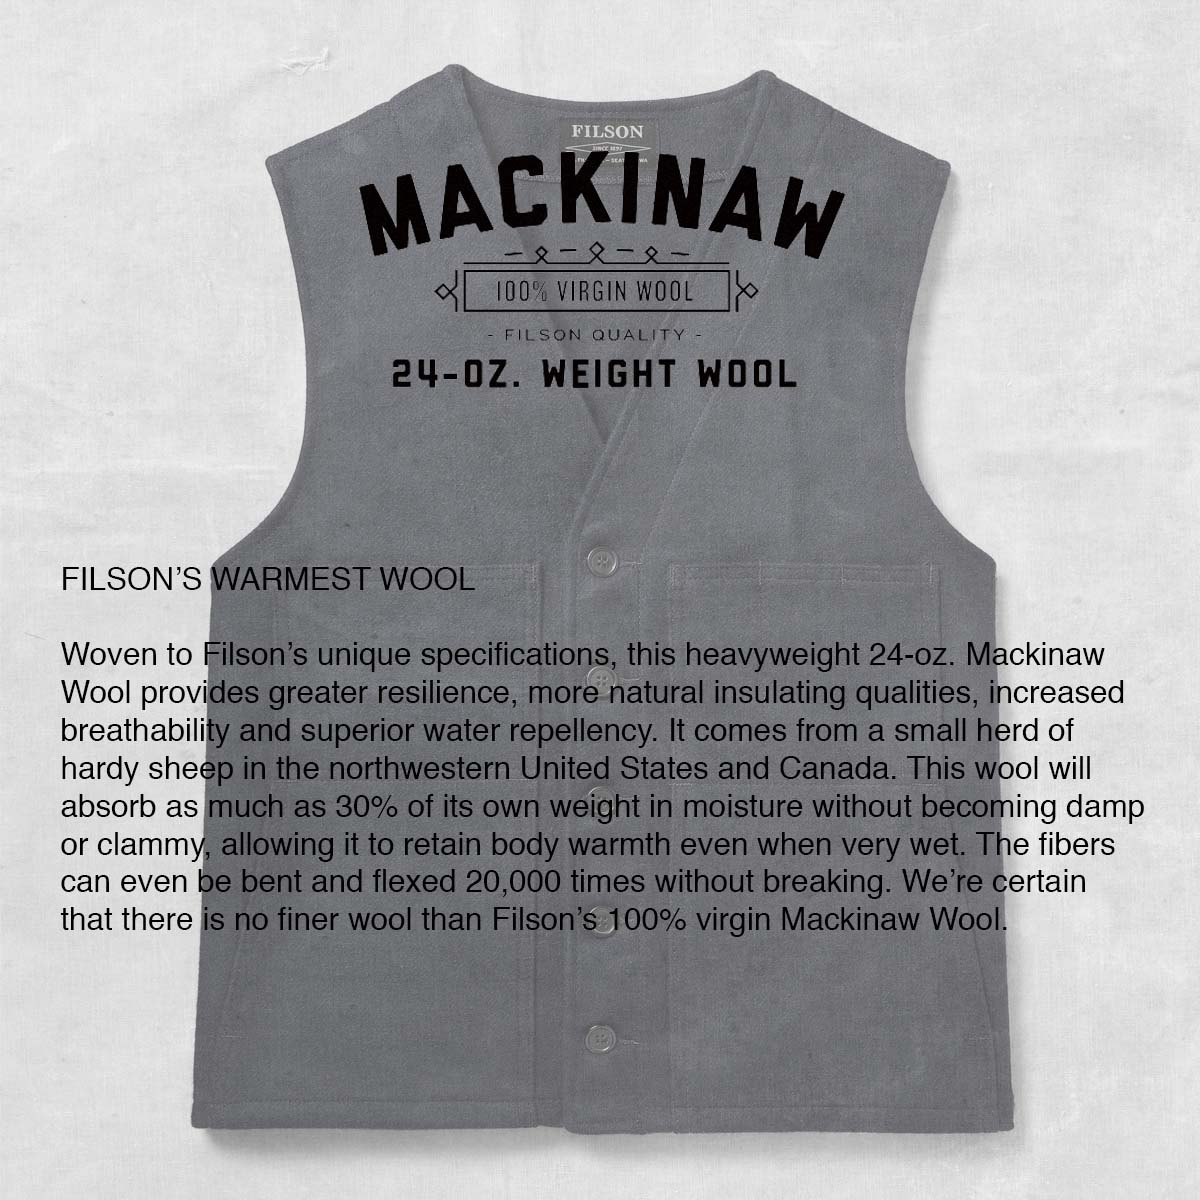 Filson Mackinaw Wool Vest, Made of 100% virgin Mackinaw Wool, verhaart niet, pilt niet, kreukt niet, en ziet er dag in dag uit goed uit.